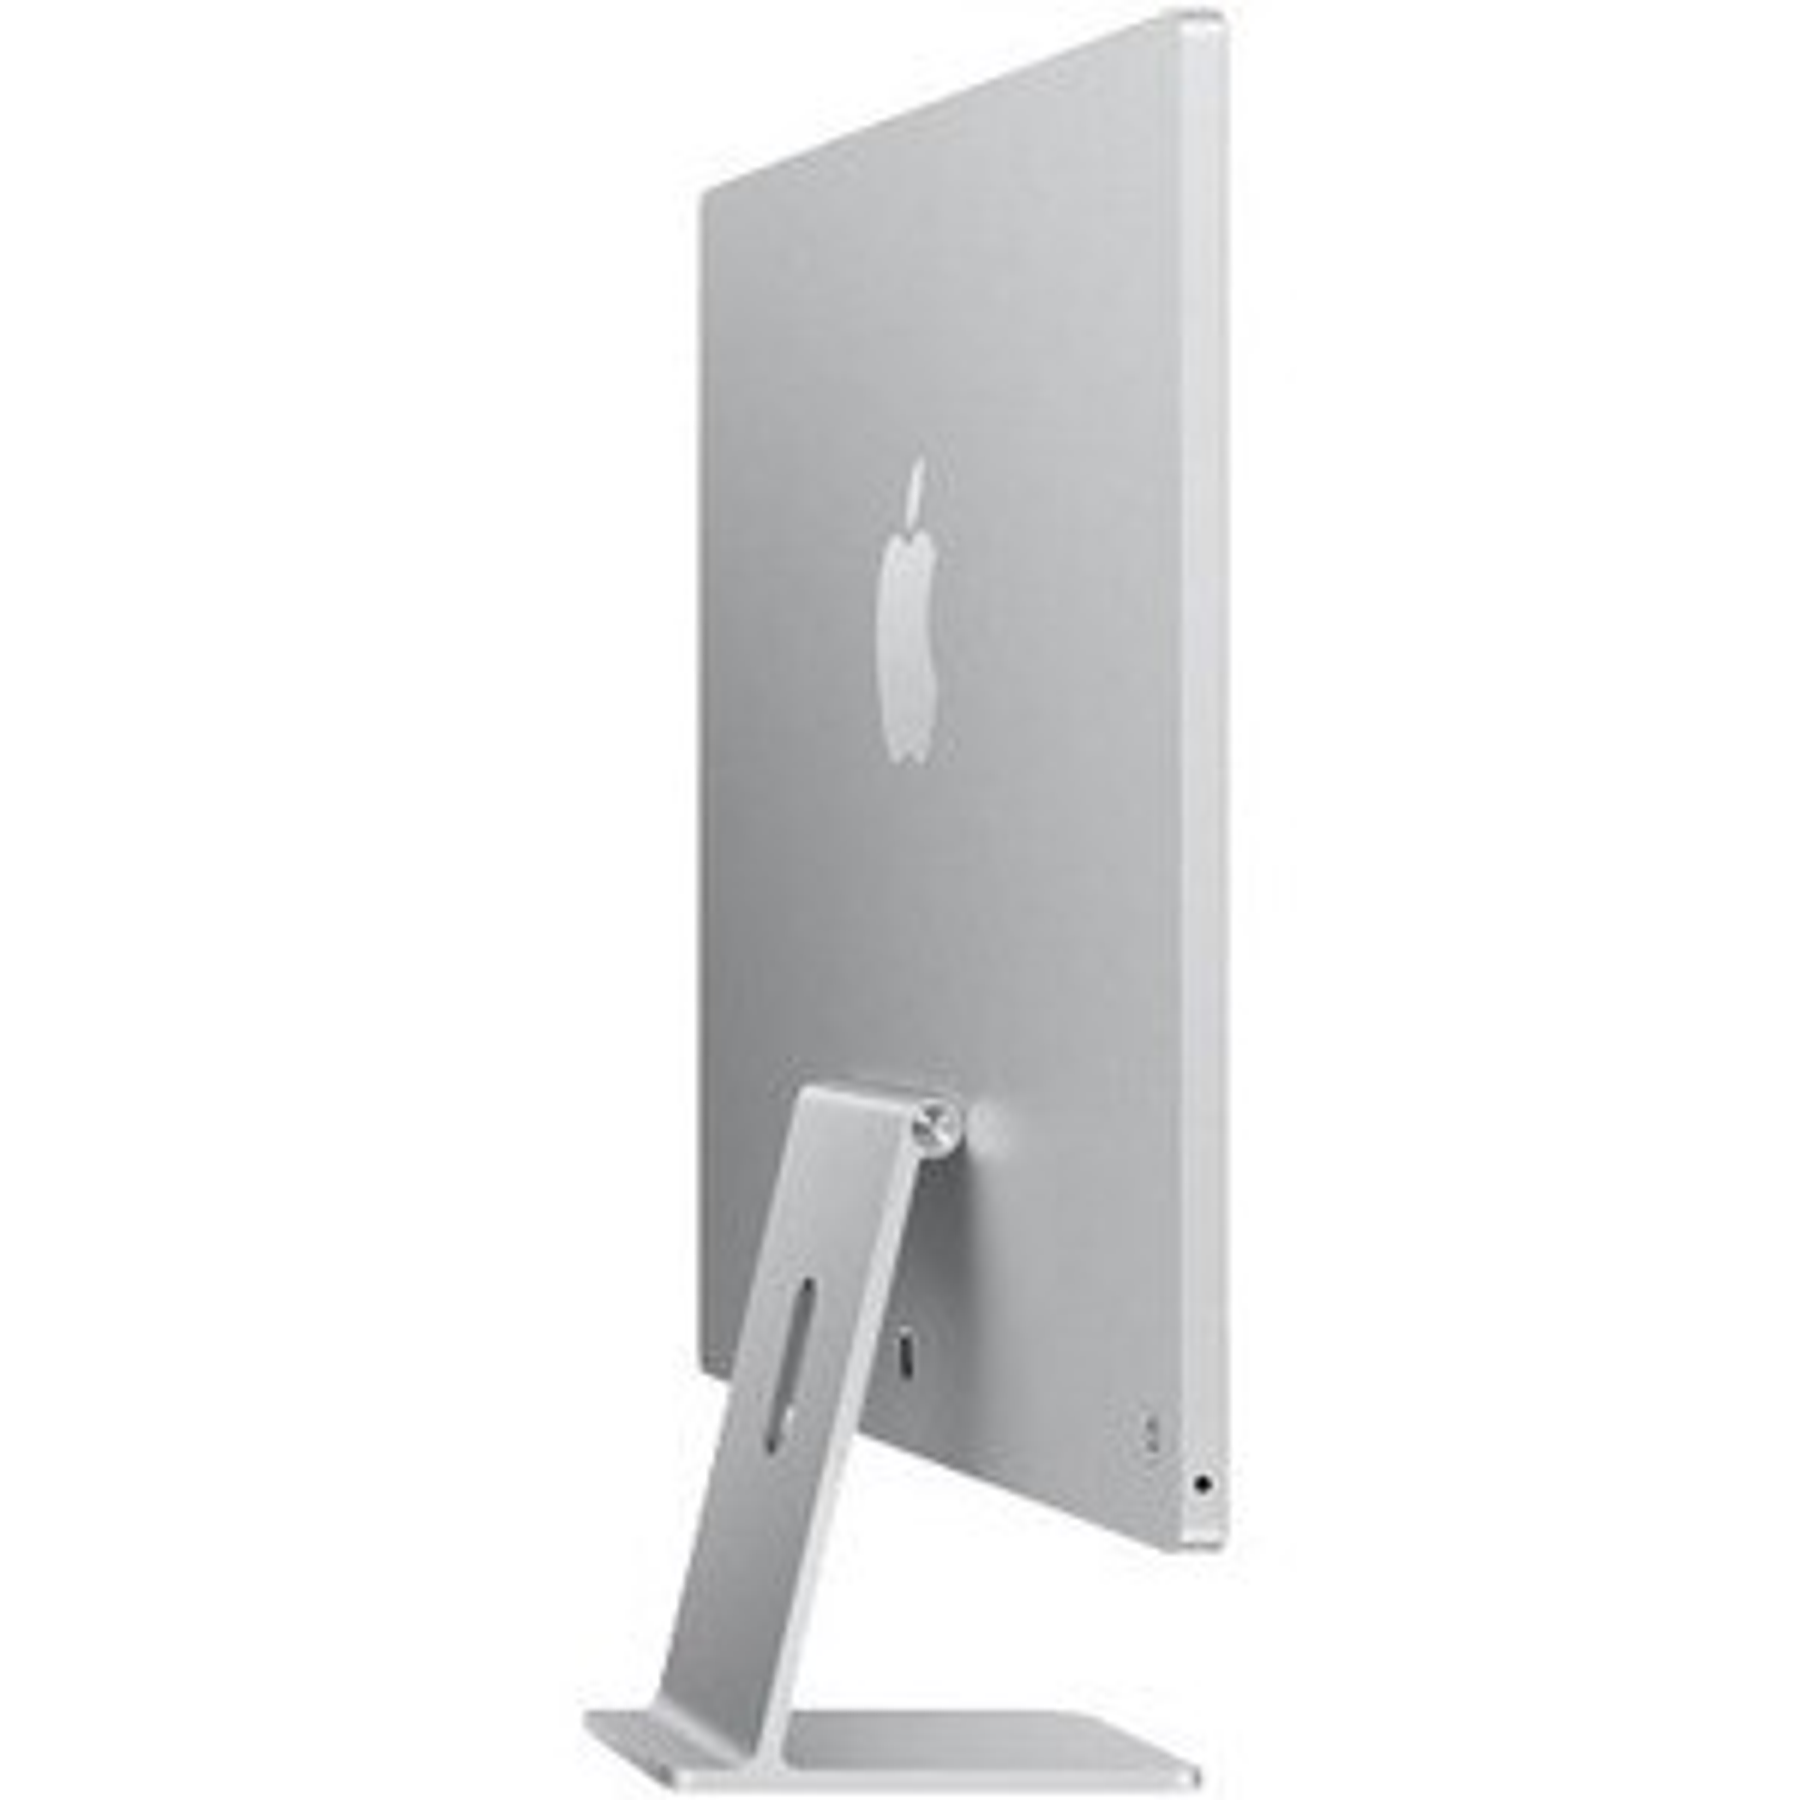 Apple iMac [Cotización a Pedido]